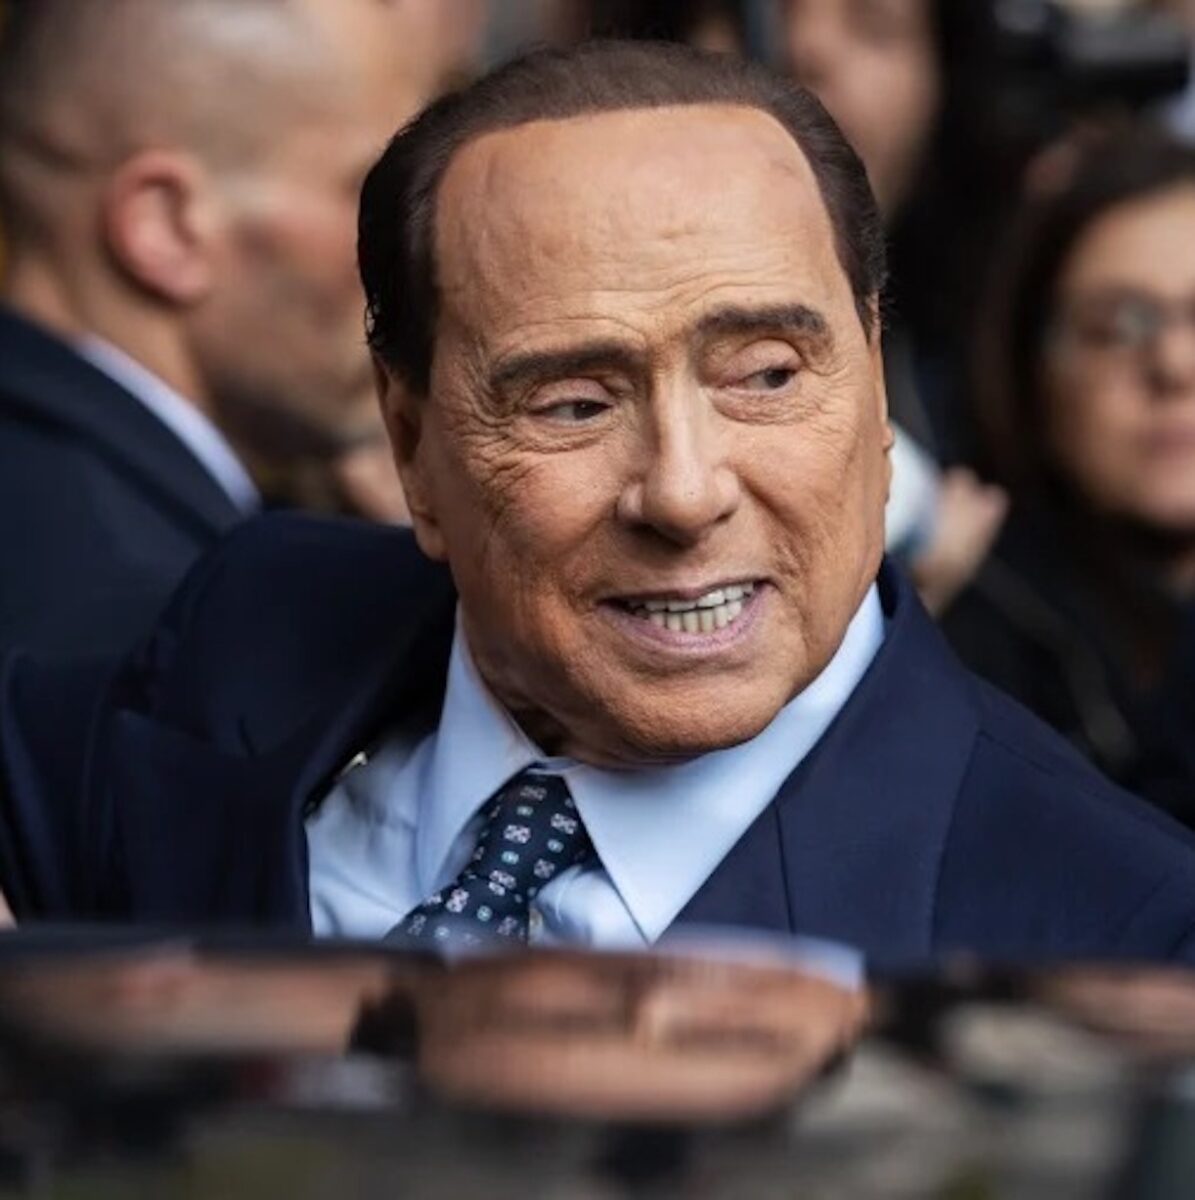 Silvio Berlusconi: “Mi manca l’aria”, il racconto choc